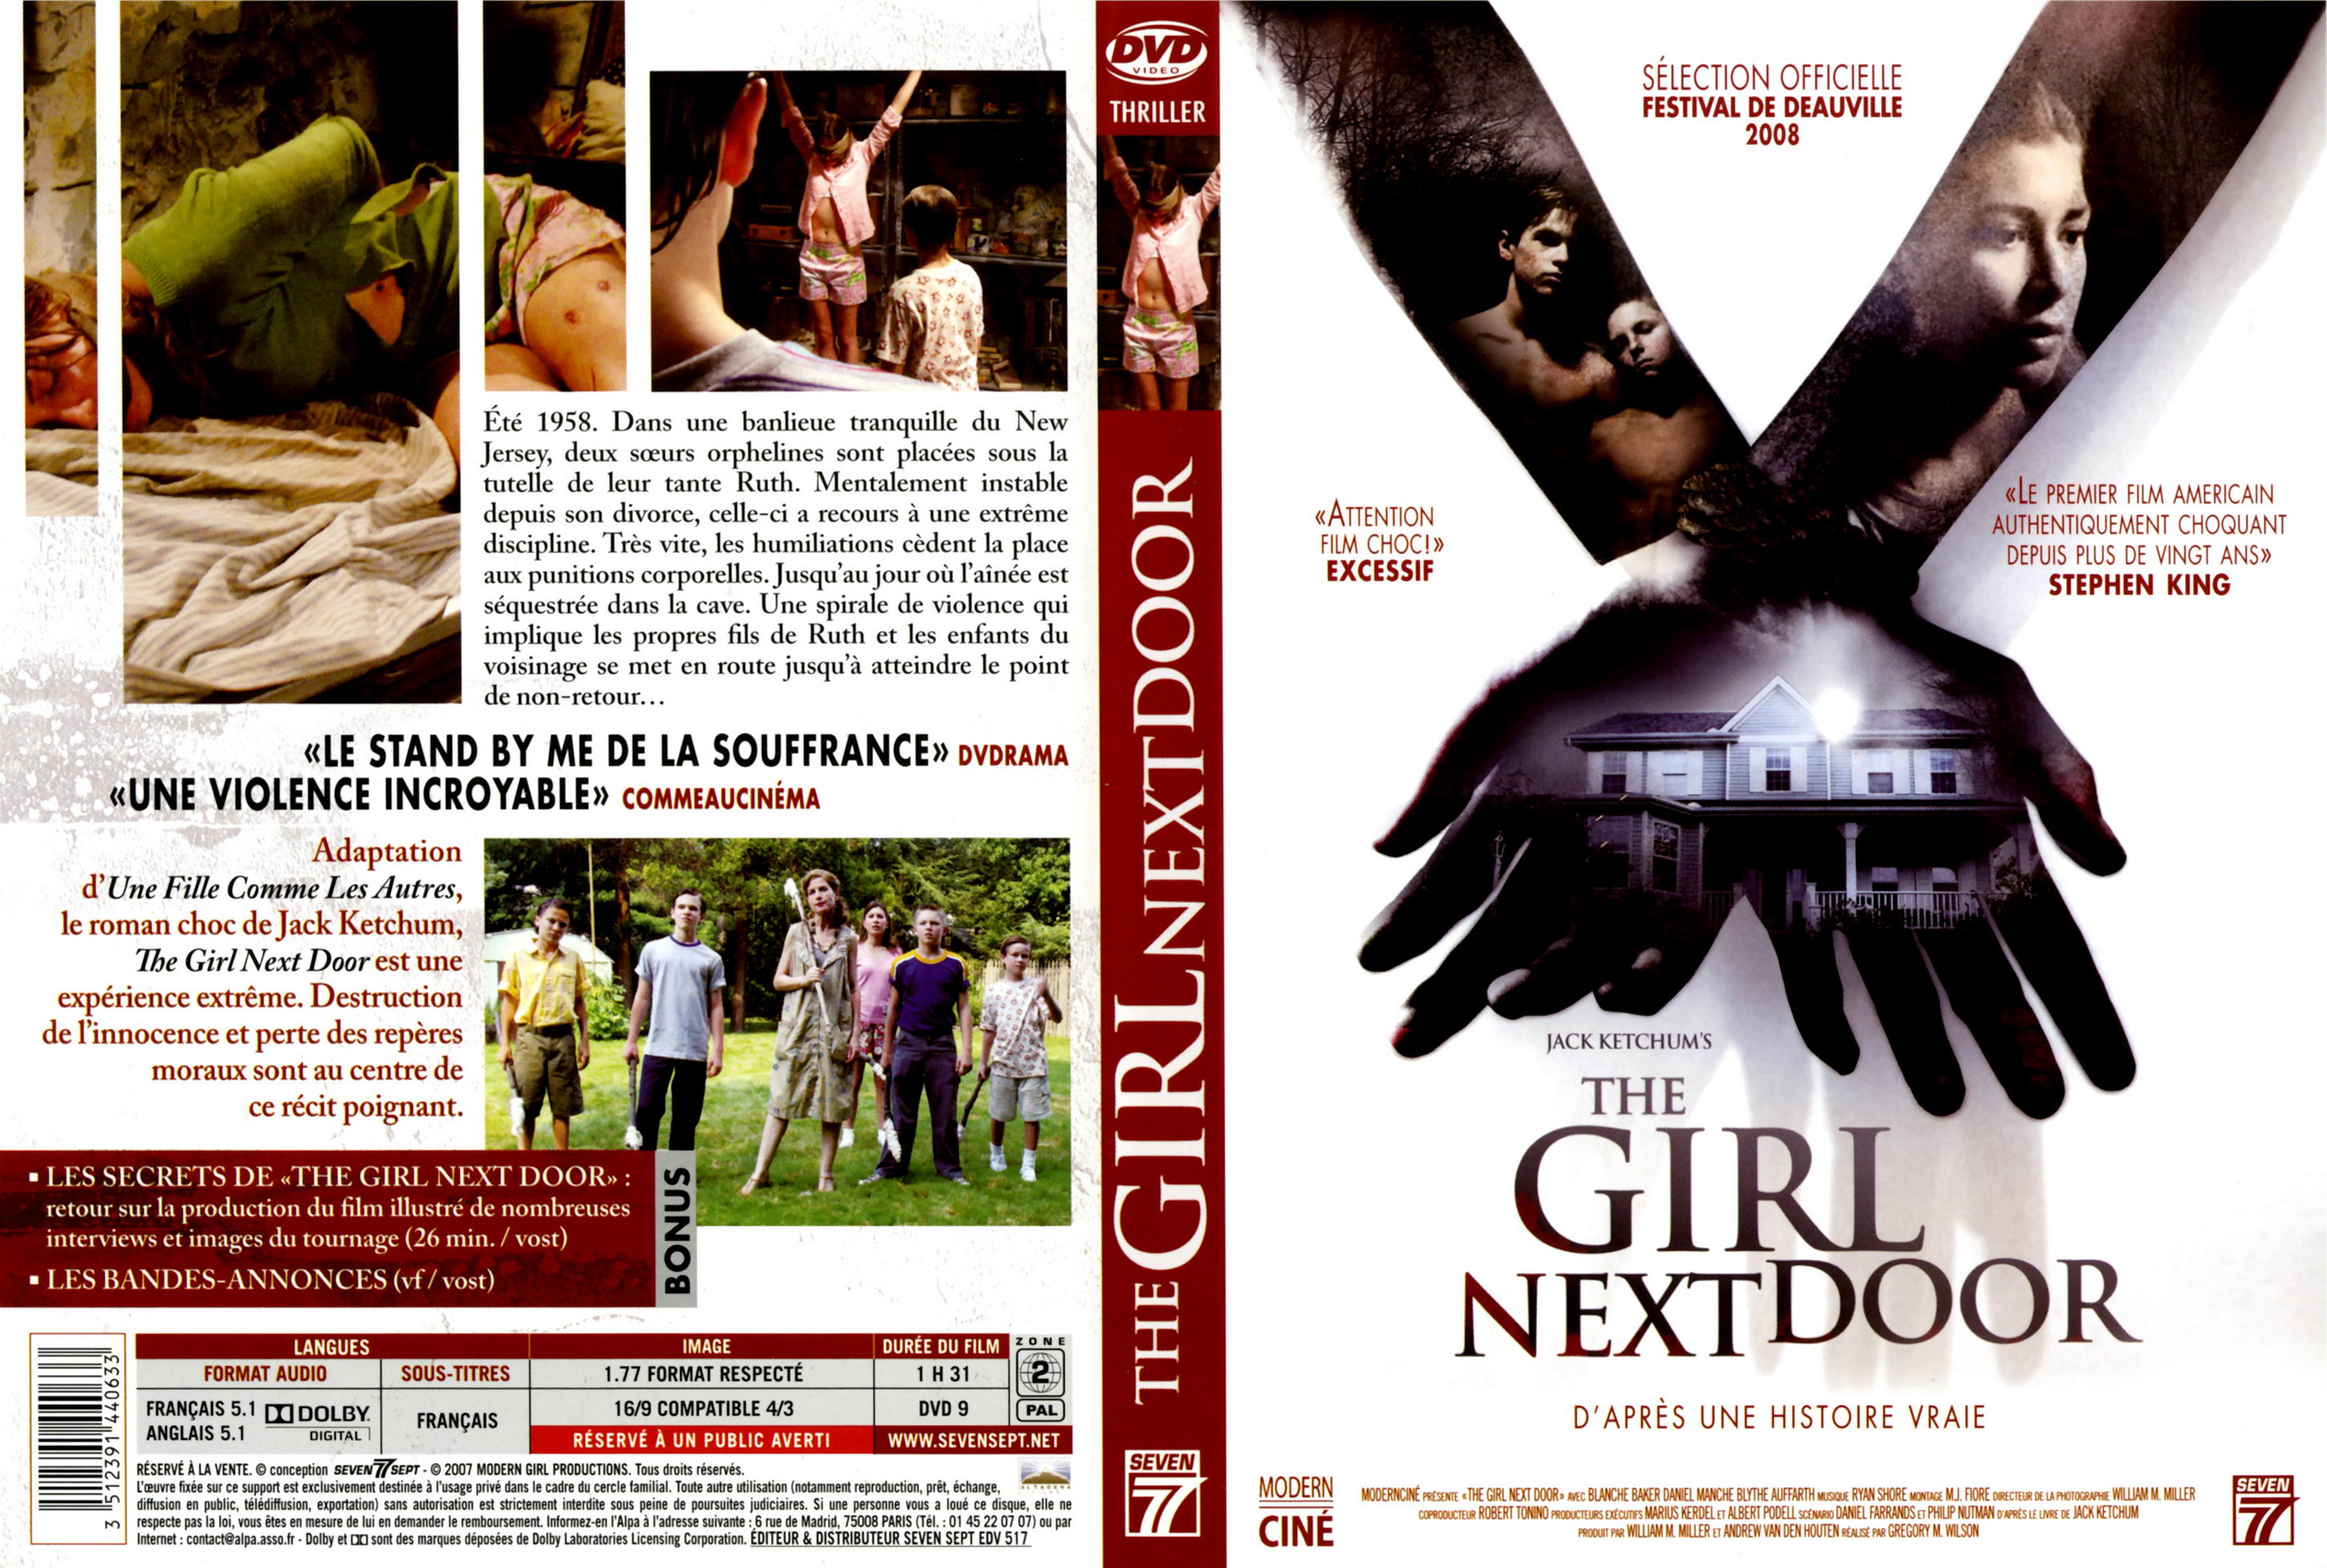 Jaquette DVD The girl next door (2008)